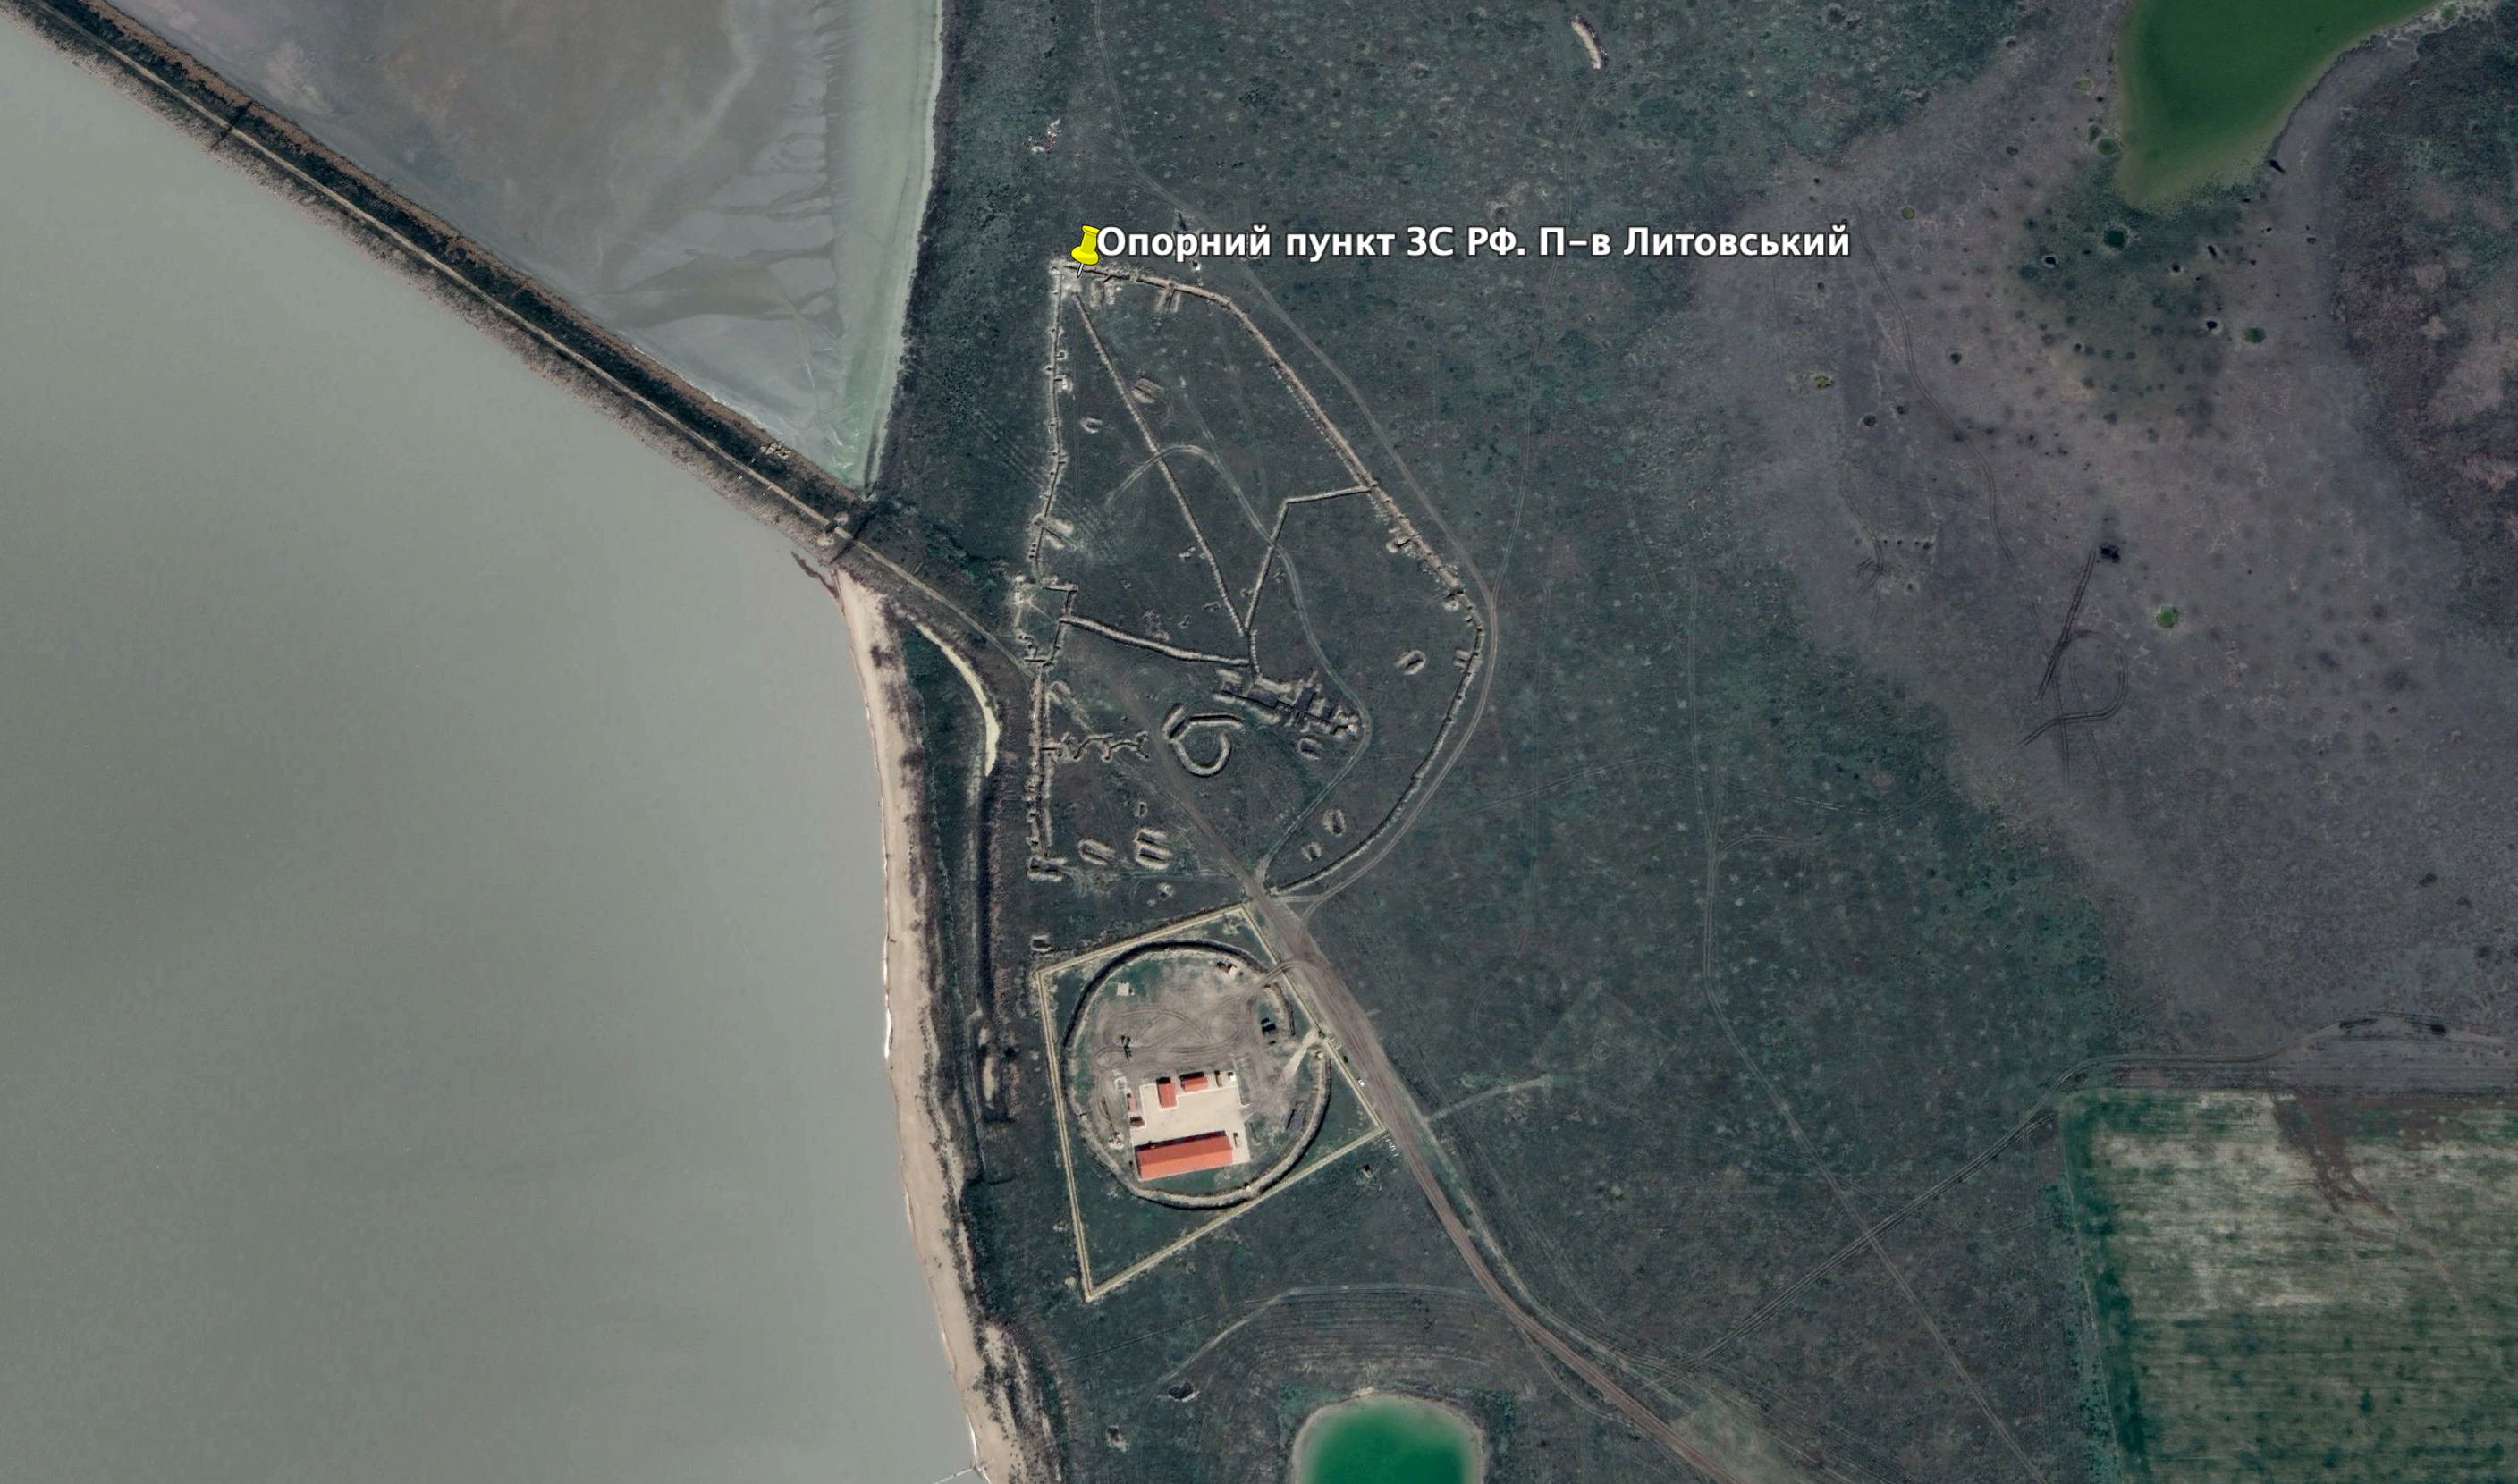 Опорний пункт ЗС РФ. Півострів Литовський Фото: Google Earth